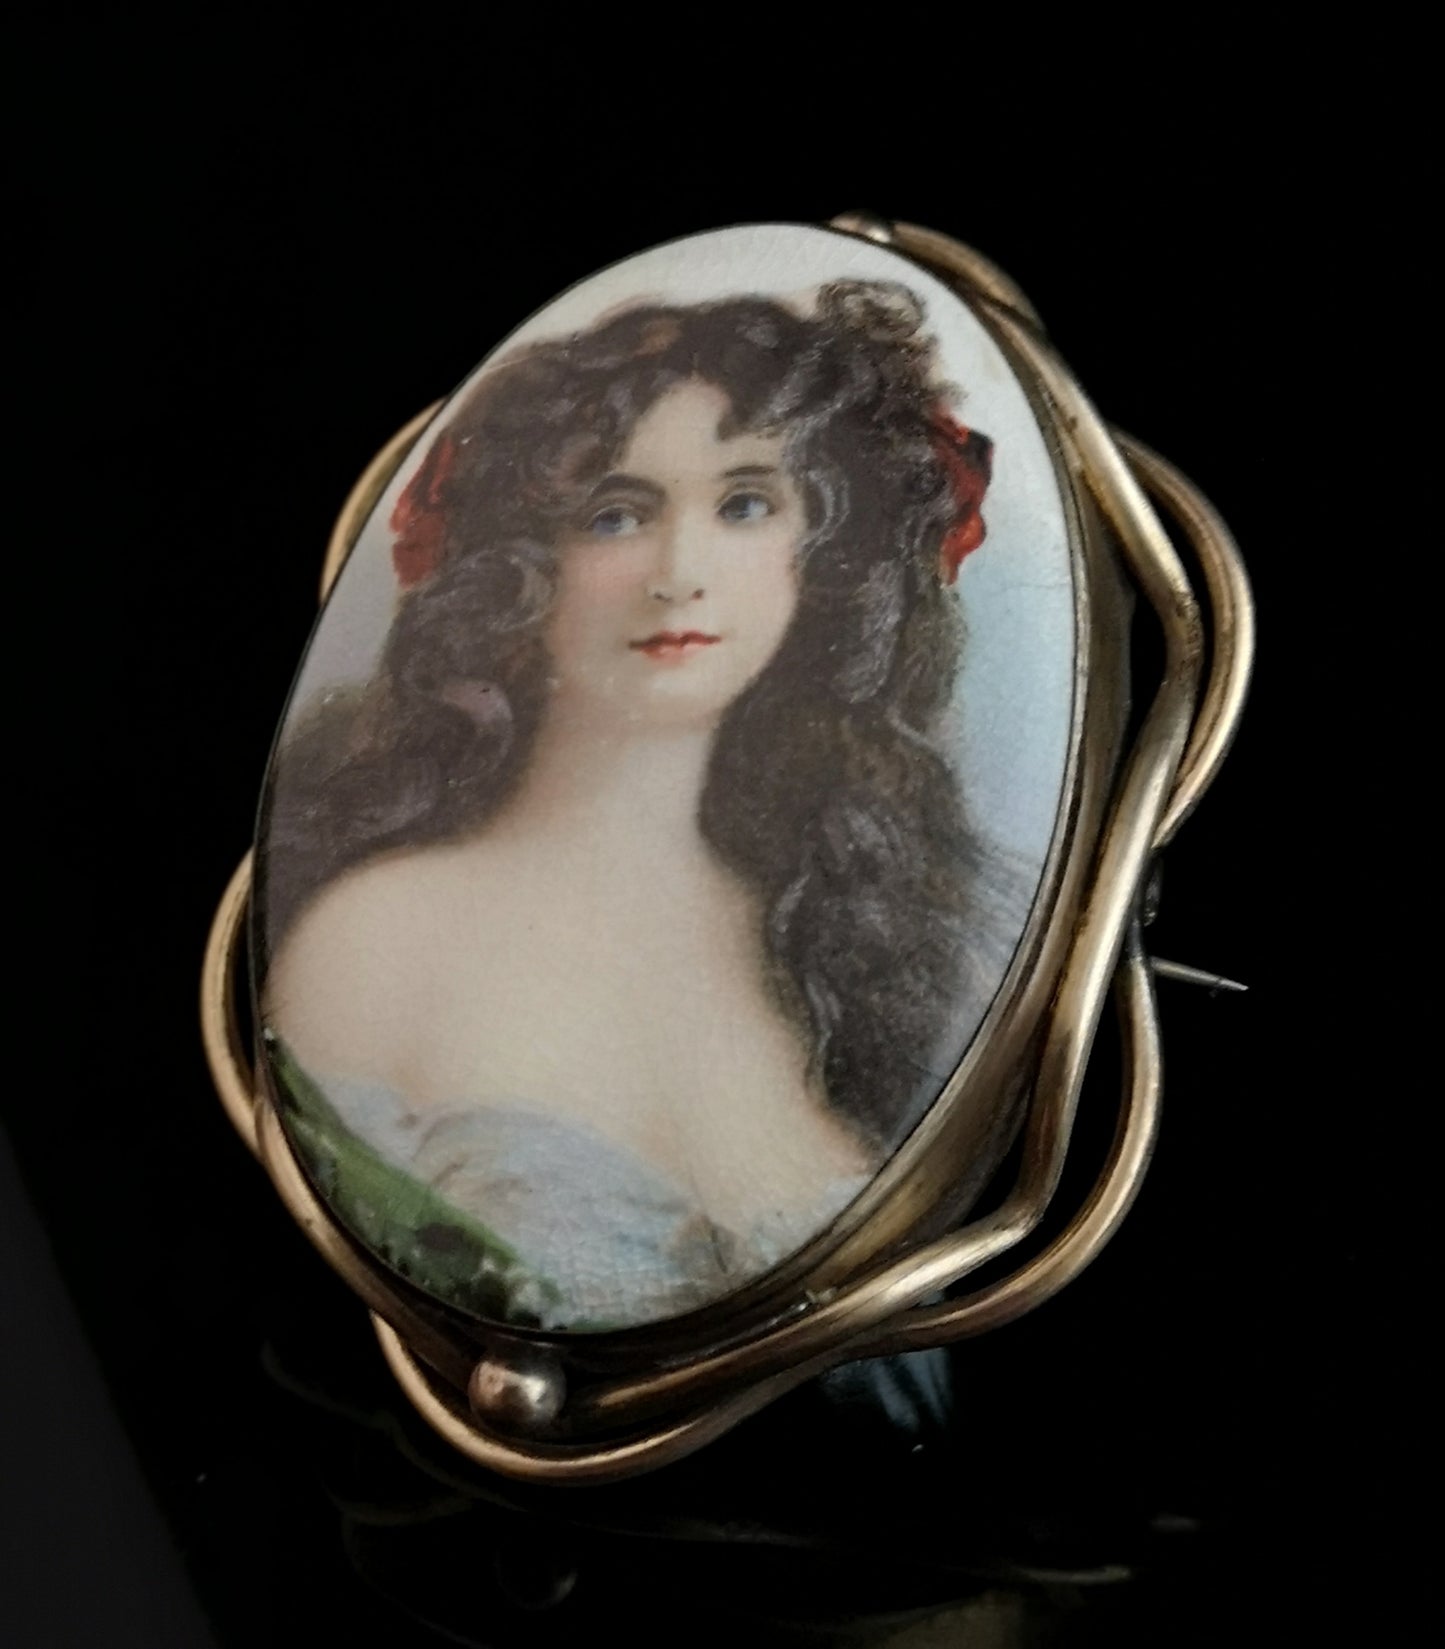 Antique Victorian portrait brooch, hand painted porcelain